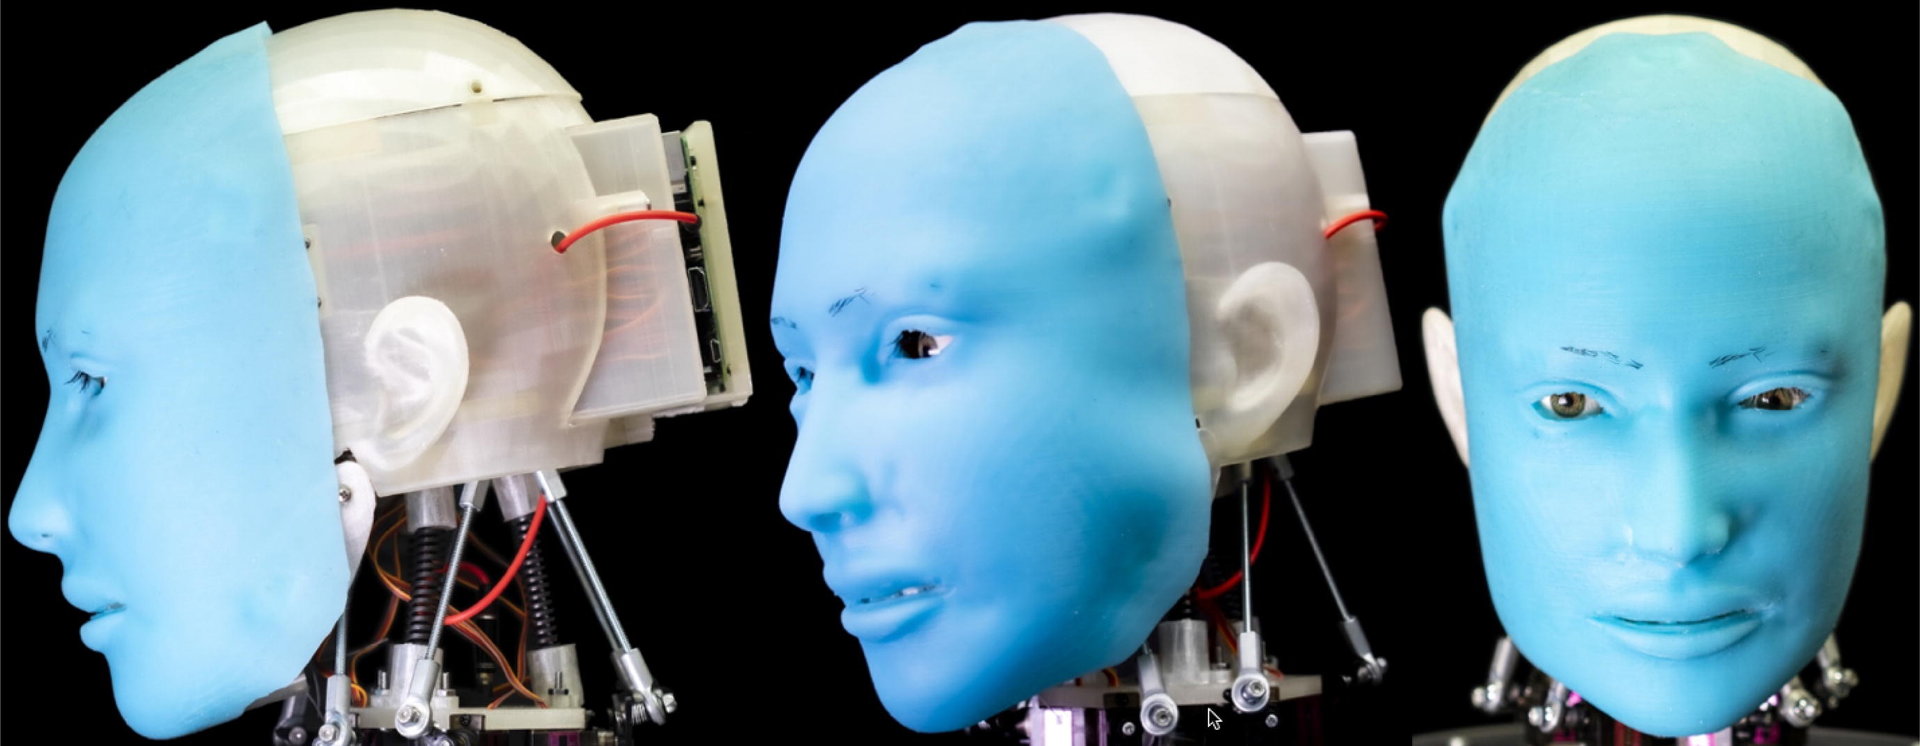 10万円以下で作れる表情豊かなヒューマノイド「Eva」　ラズパイで動くオープンソースロボット